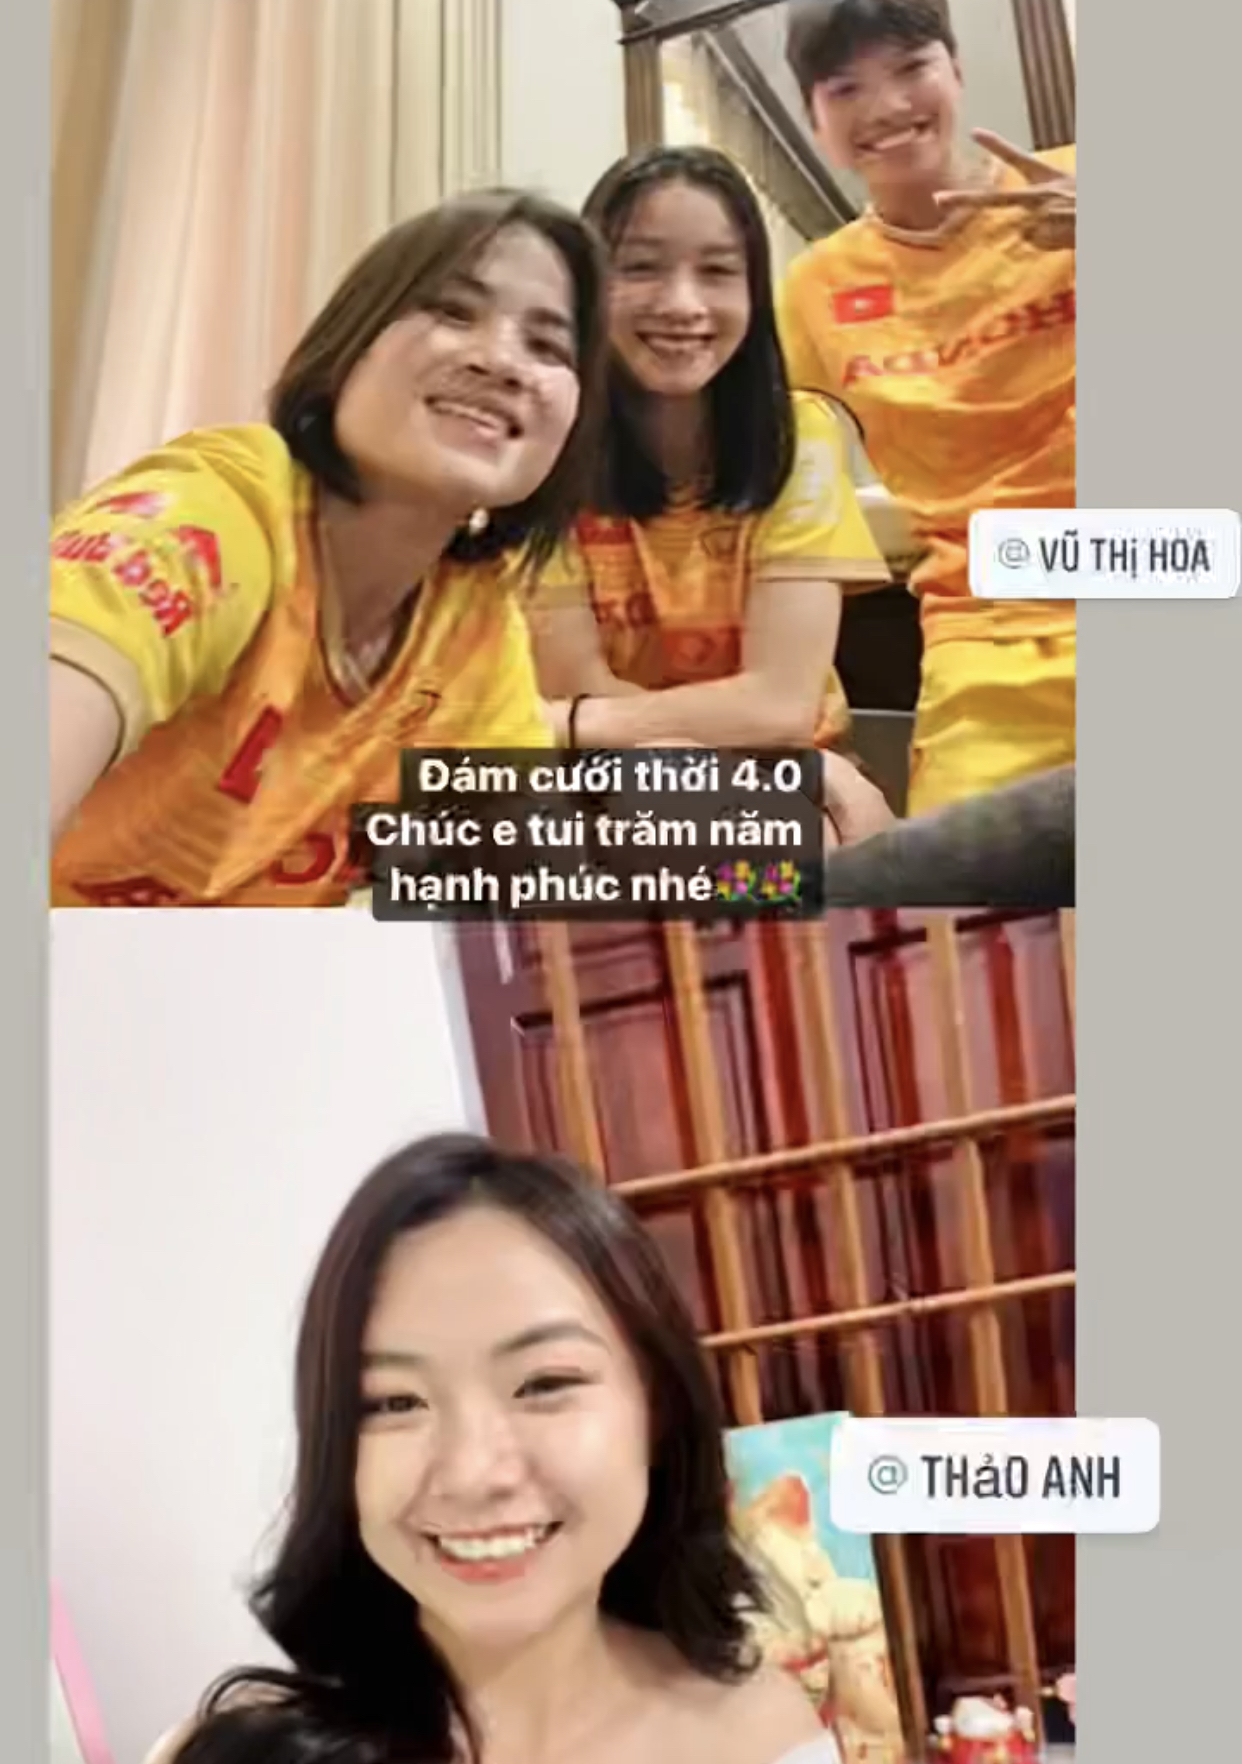 Cầu thủ đội tuyển nữ Việt Nam lên xe hoa, đồng đội phải chúc mừng online vì đang tập luyện chuẩn bị thi đấu - Ảnh 2.